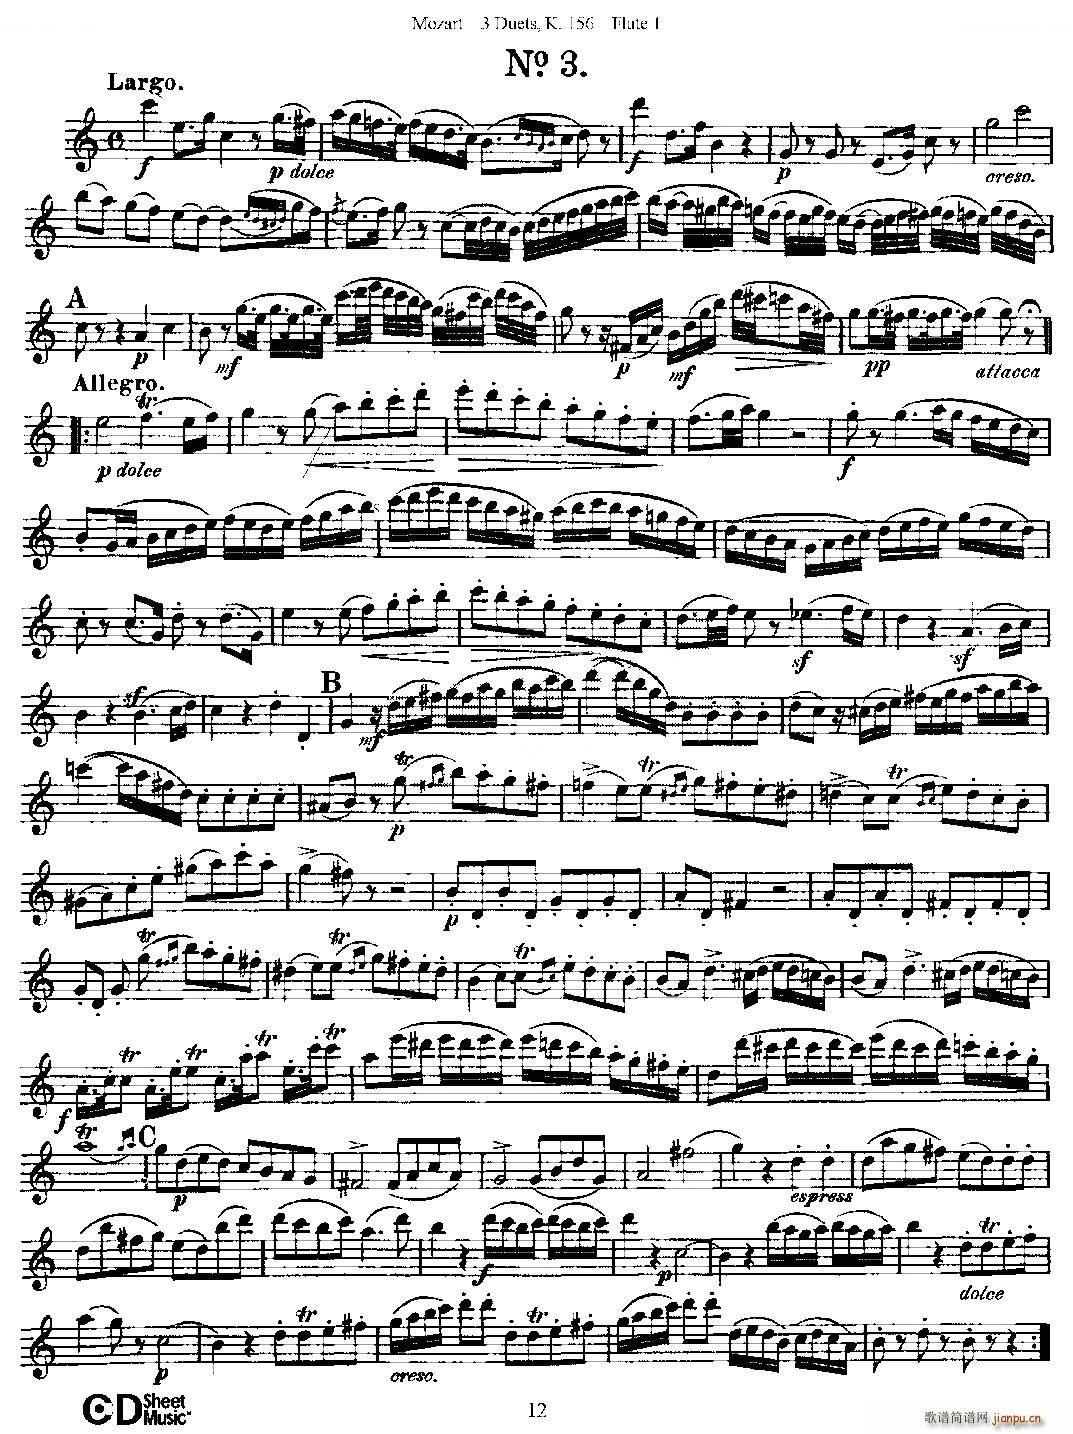 3 Duets K 156 之第一长笛 二重奏三首 K156号 铜管(笛箫谱)12